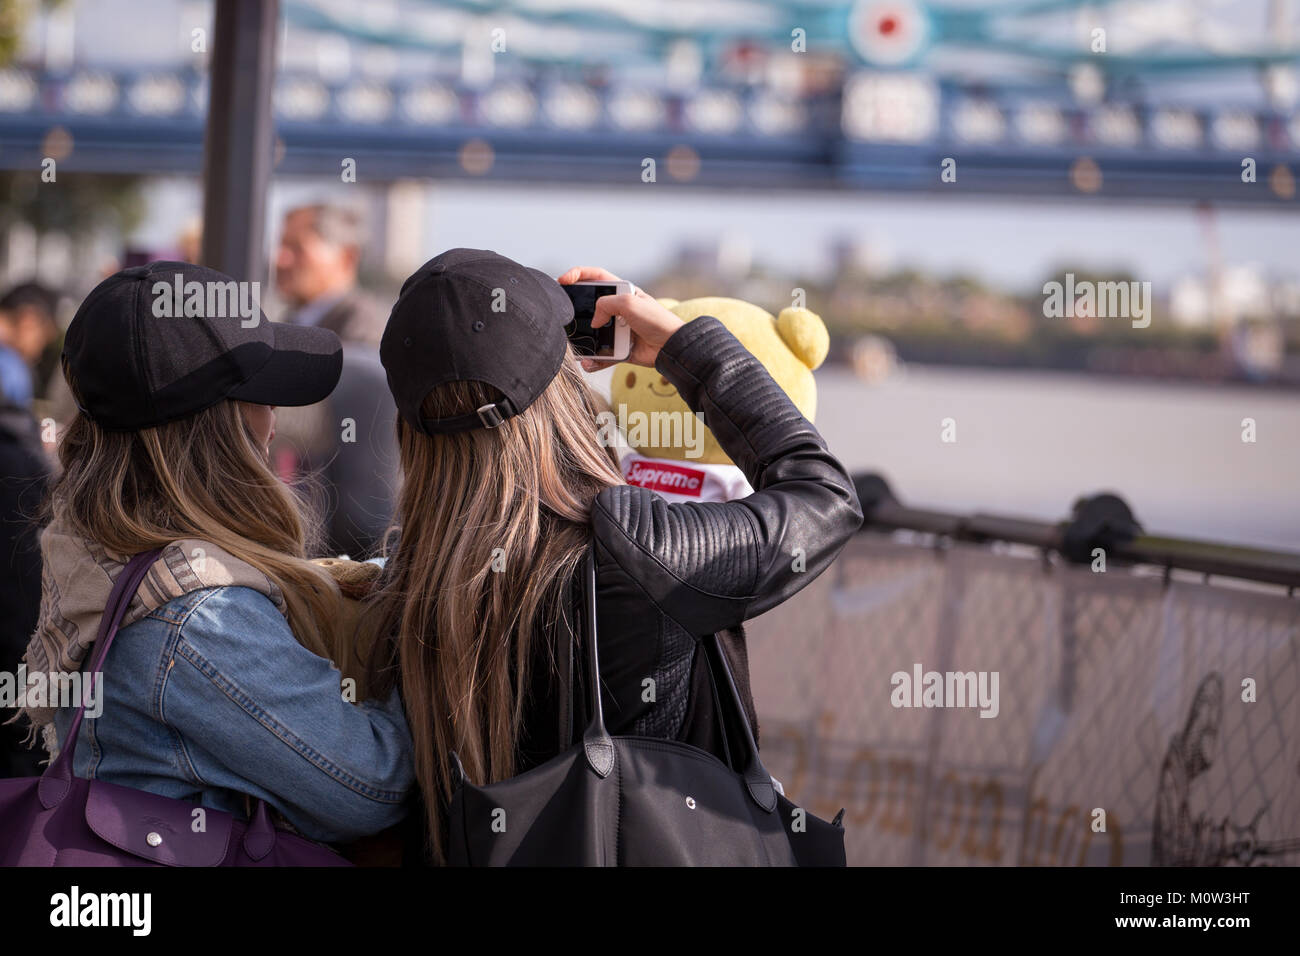 Freunde ein Bild von Ihren Teddybär mit der Londoner Tower Bridge im Hintergrund Stockfoto